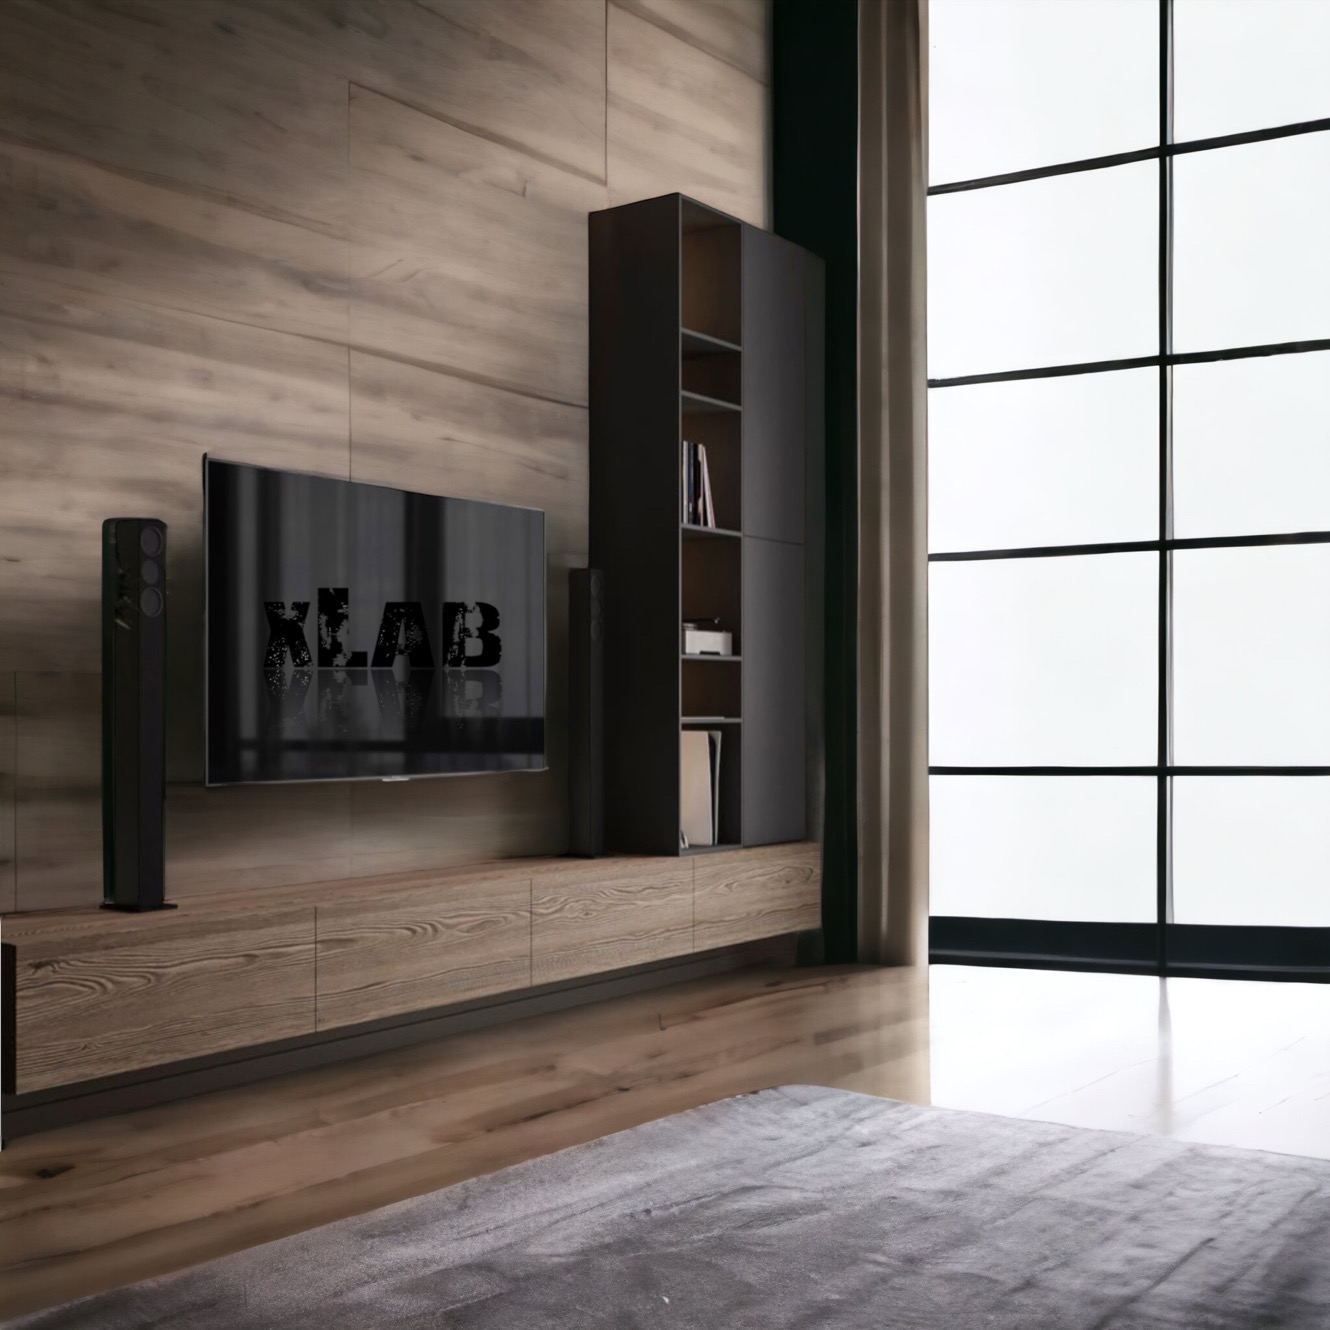 Air: mobile tv di design per il soggiorno